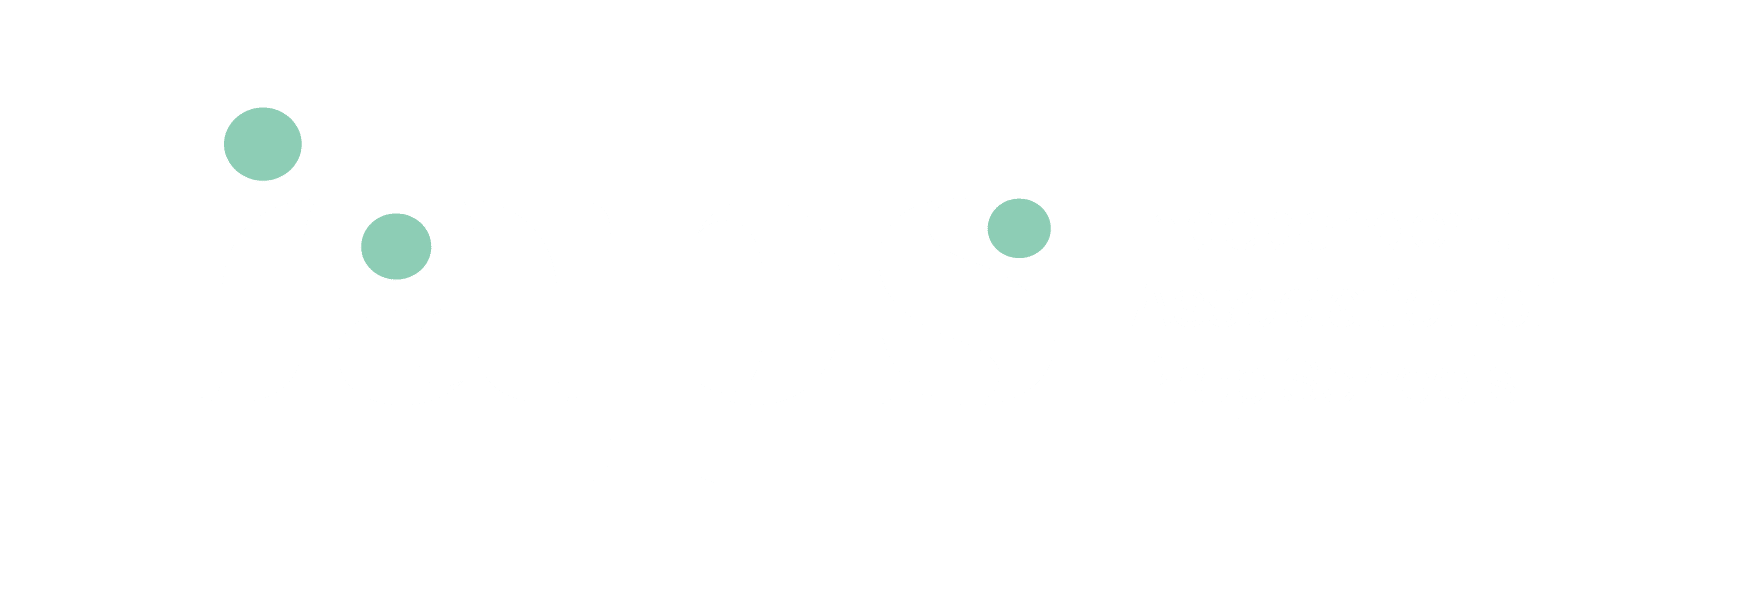 IAPS logo white